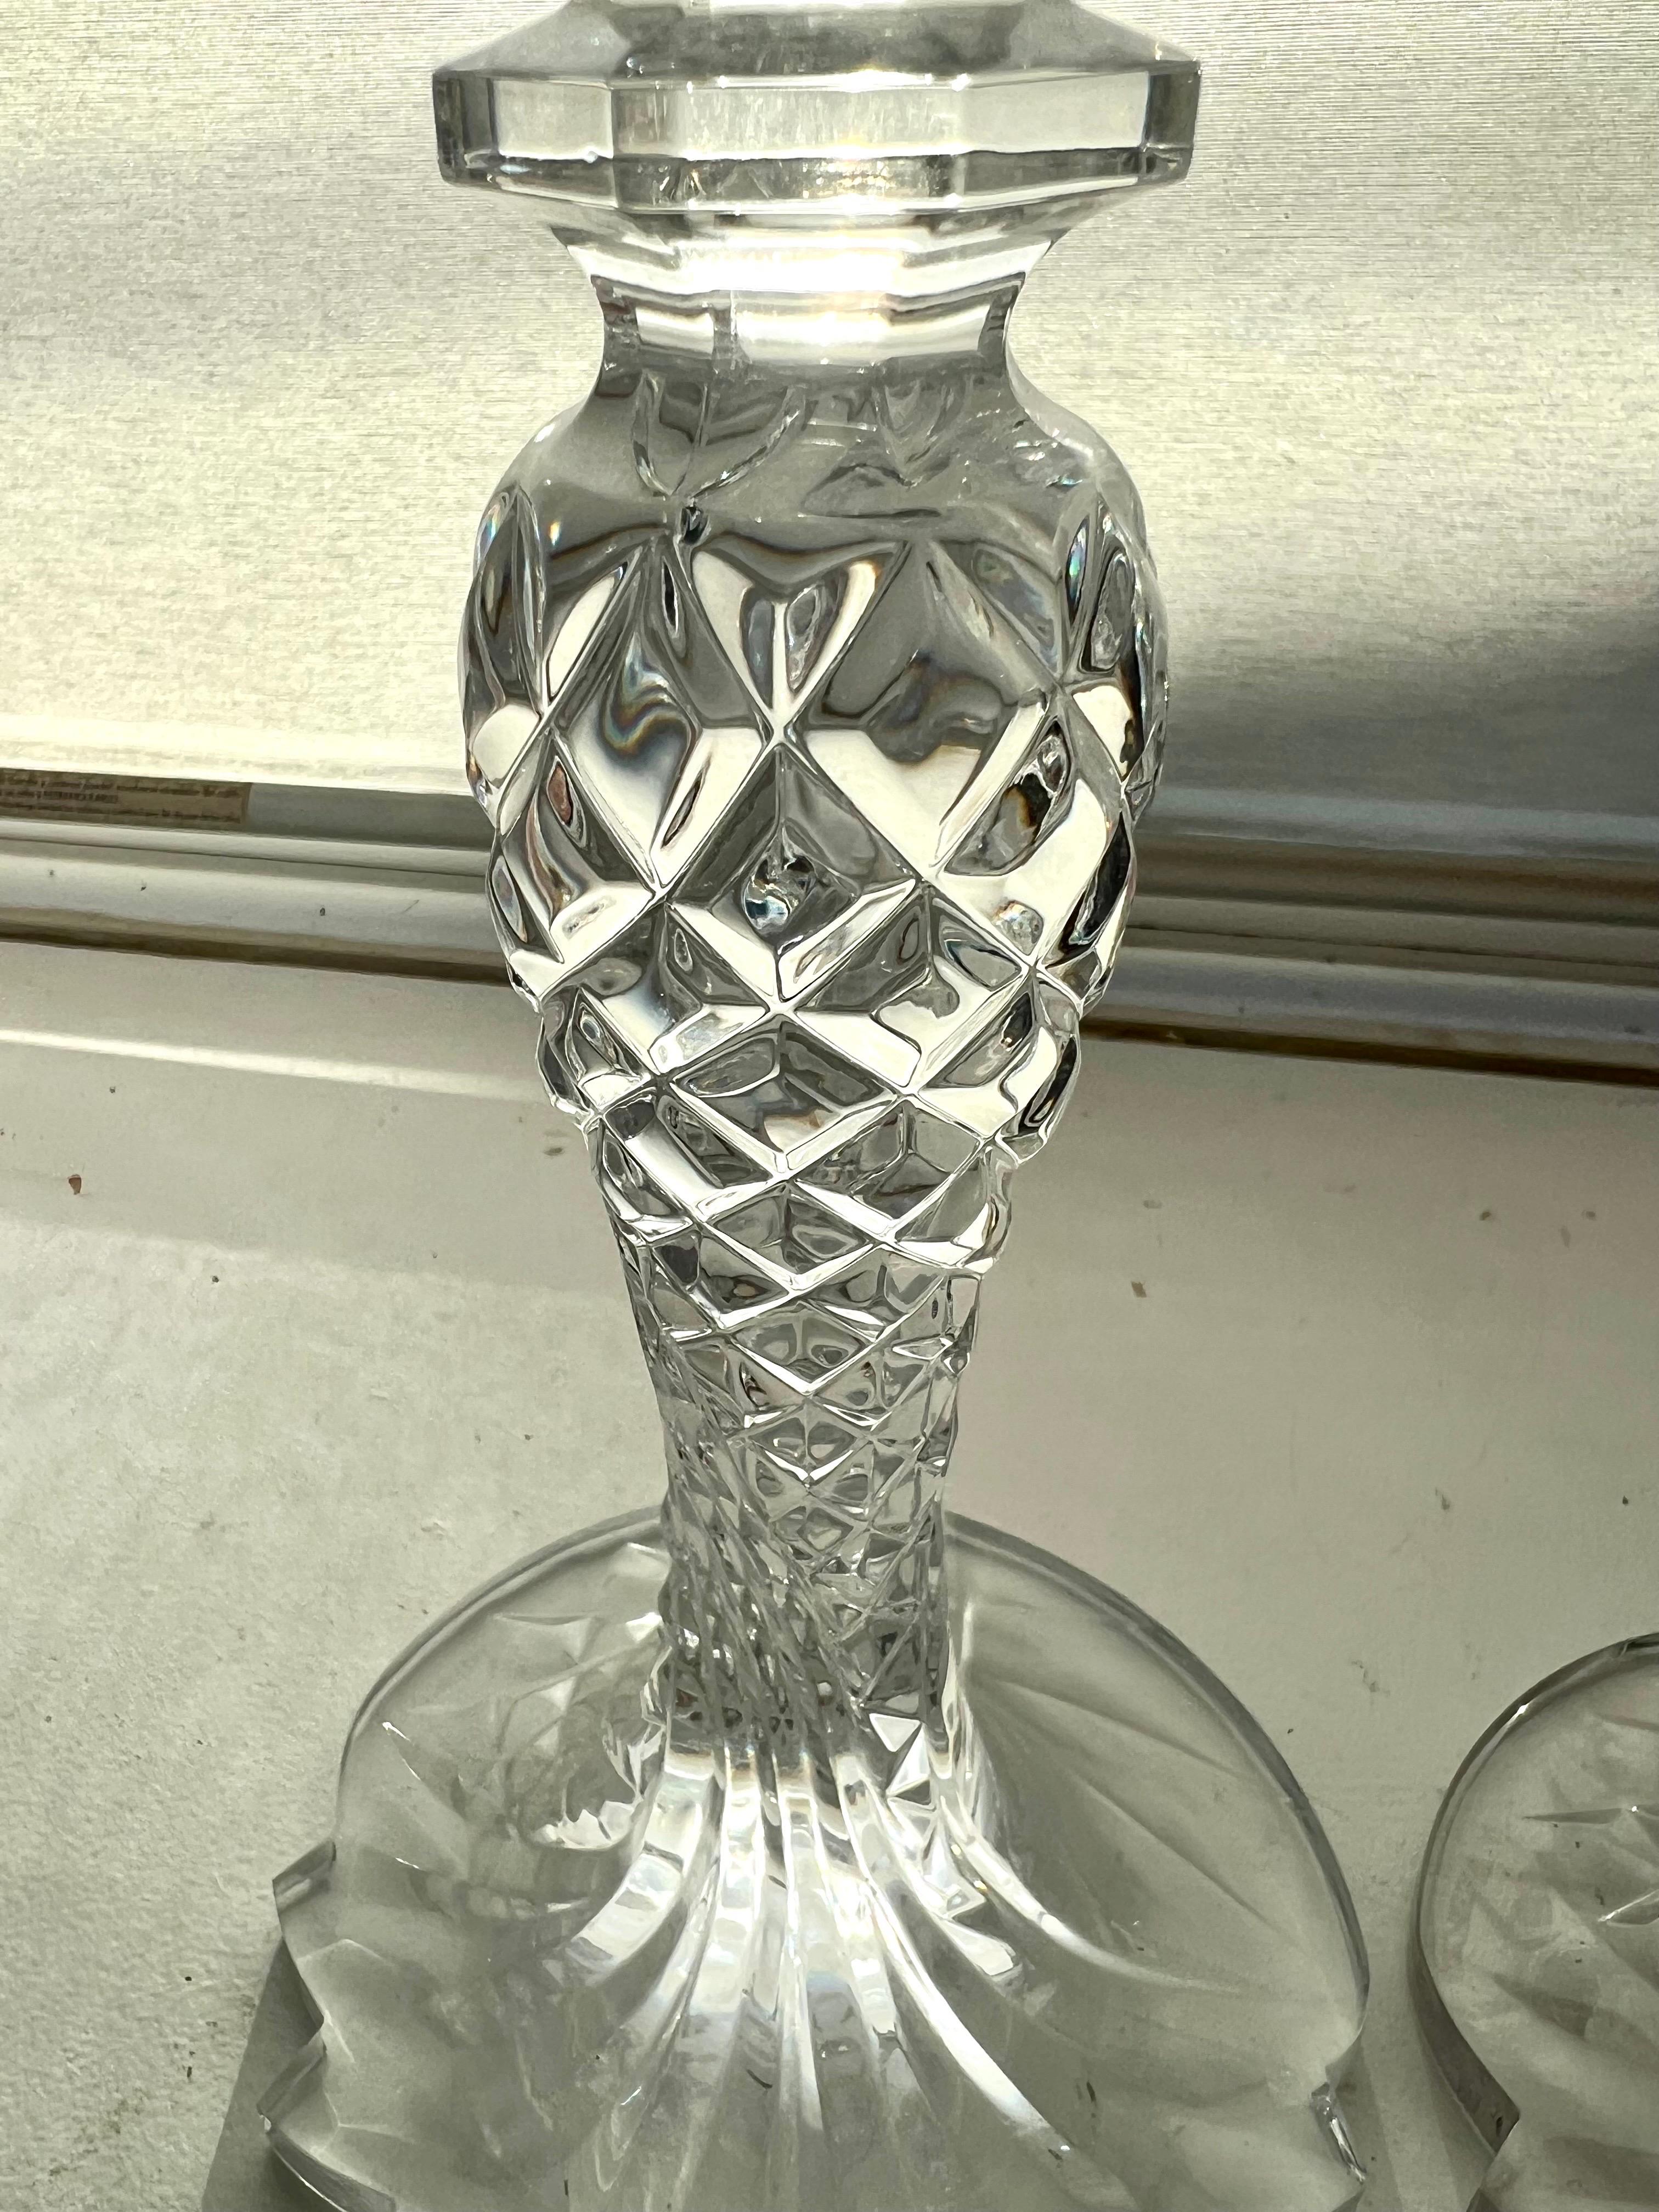 Schön, in ihrer ursprünglichen Box. 
Ein Paar Sea Jewel Crystal Candlesticks von Waterford. Dieses Design ist die abstrakte Version der Seepferdchen, die 2003 eingeführt wurde.
Ausschließlich vom renommiertesten Kunsthandwerker in Slowenien